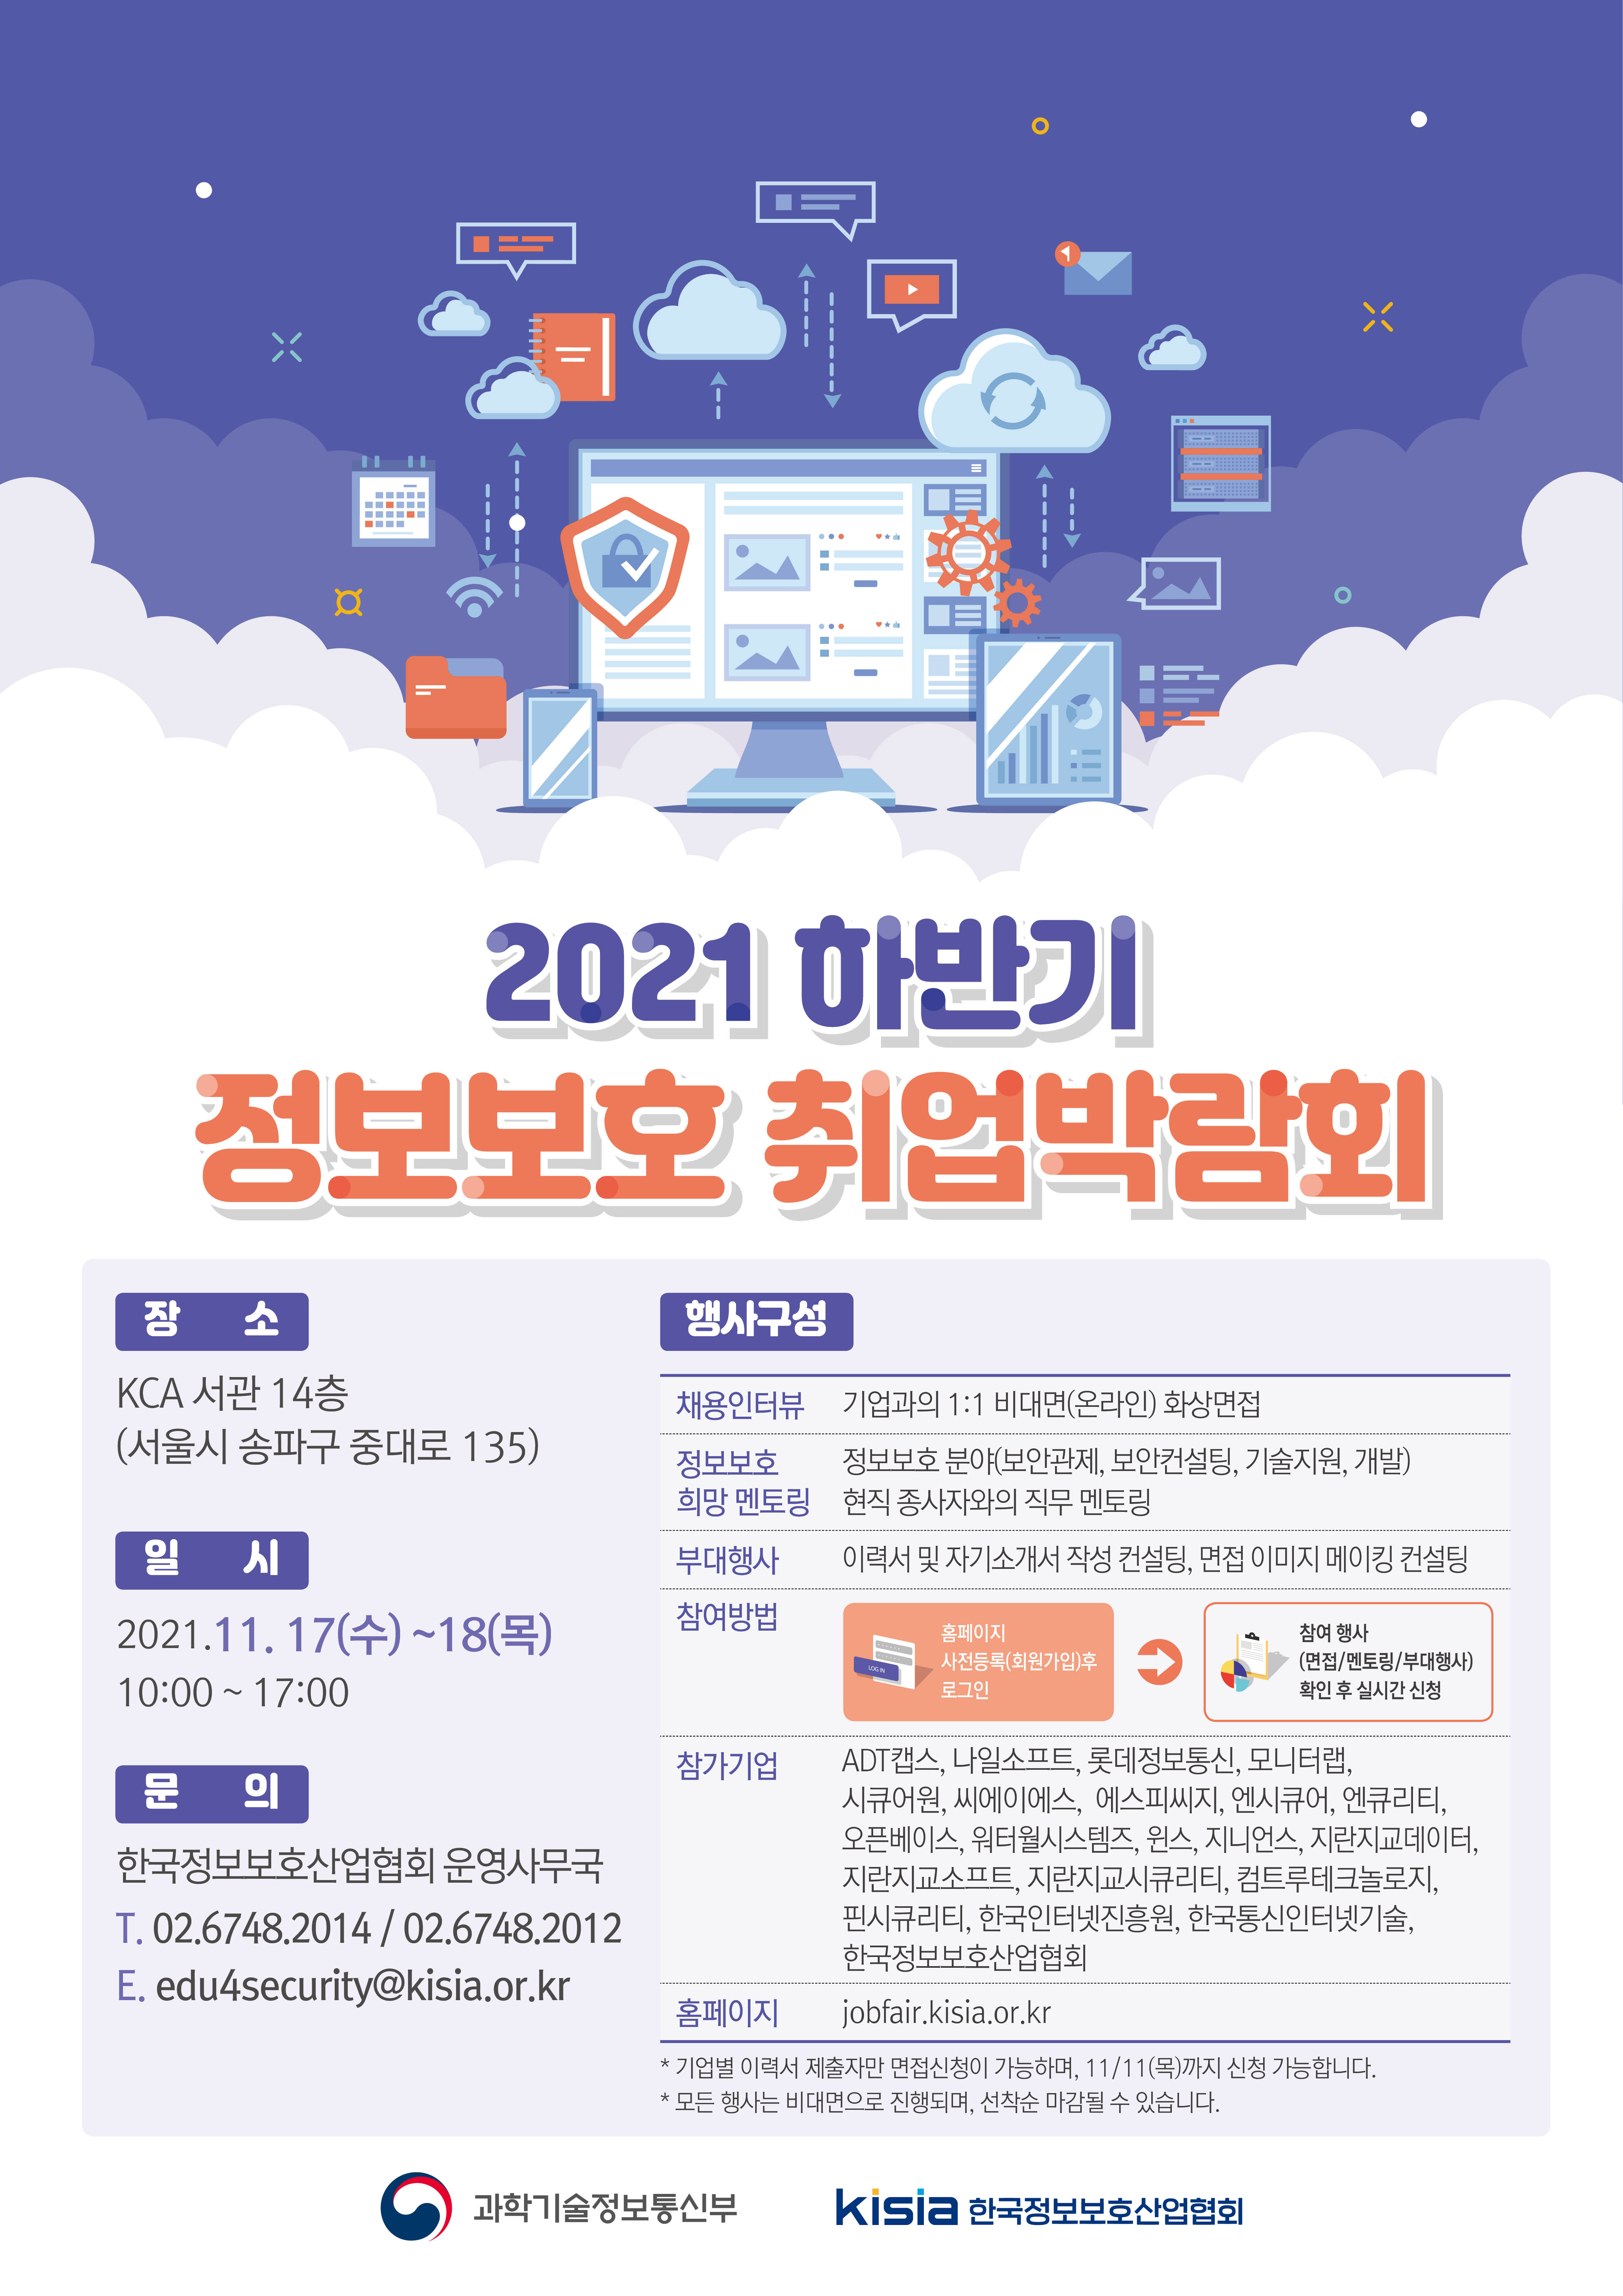 [산학취업처] 2021 하반기 정보보호취업박람회(비대면) 개최 안내